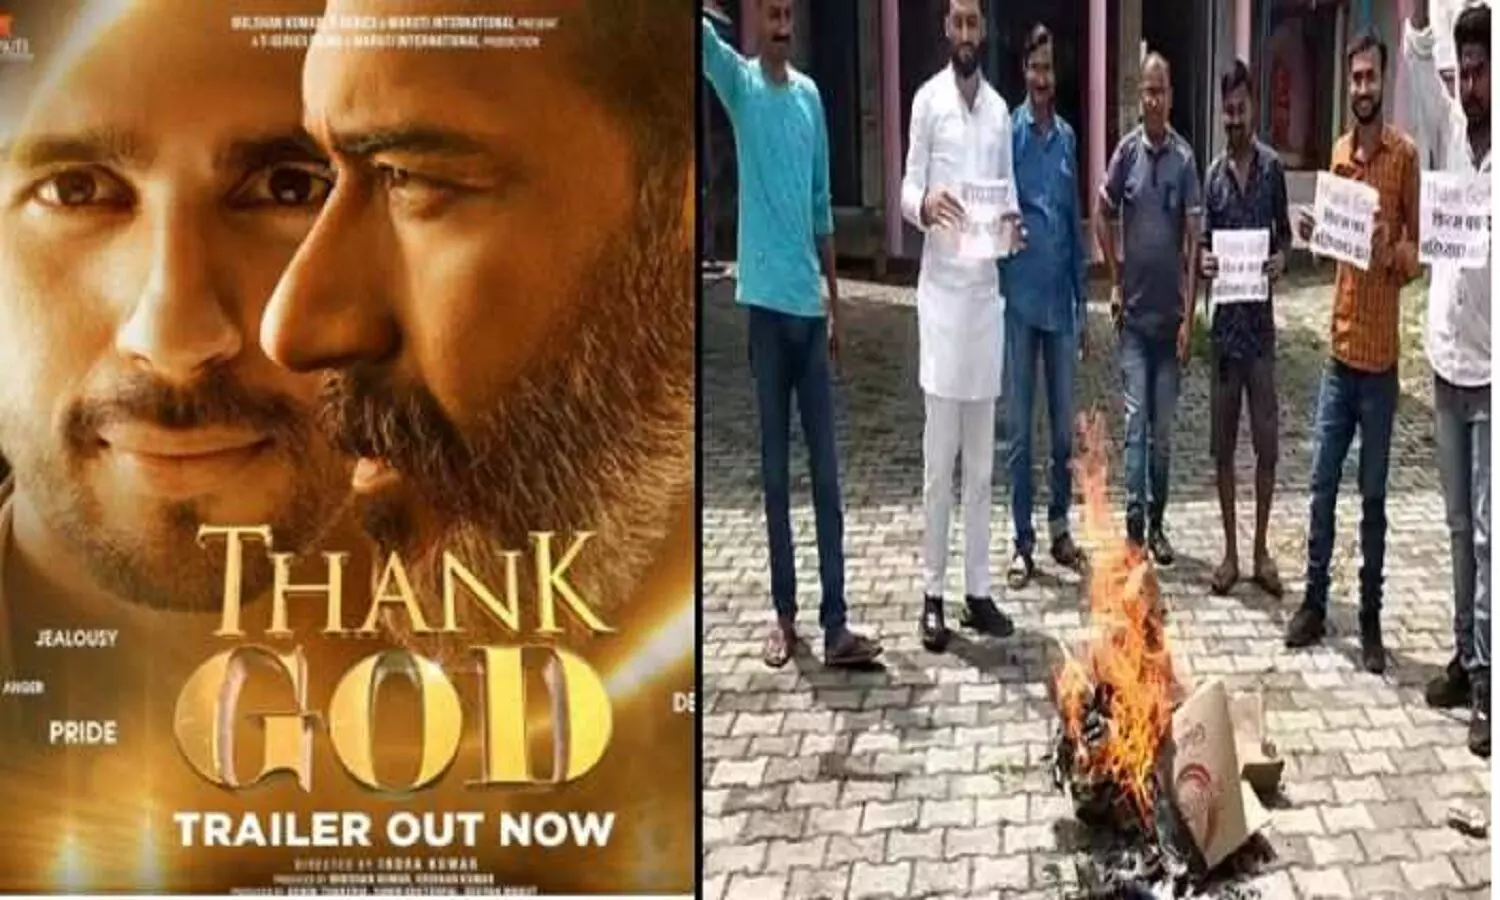 मध्य प्रदेश में अजय देवगन की फिल्म Thank God के खिलाफ प्रदर्शन, सरकार से लेकर हिंदू संगठनों ने जताया विरोध